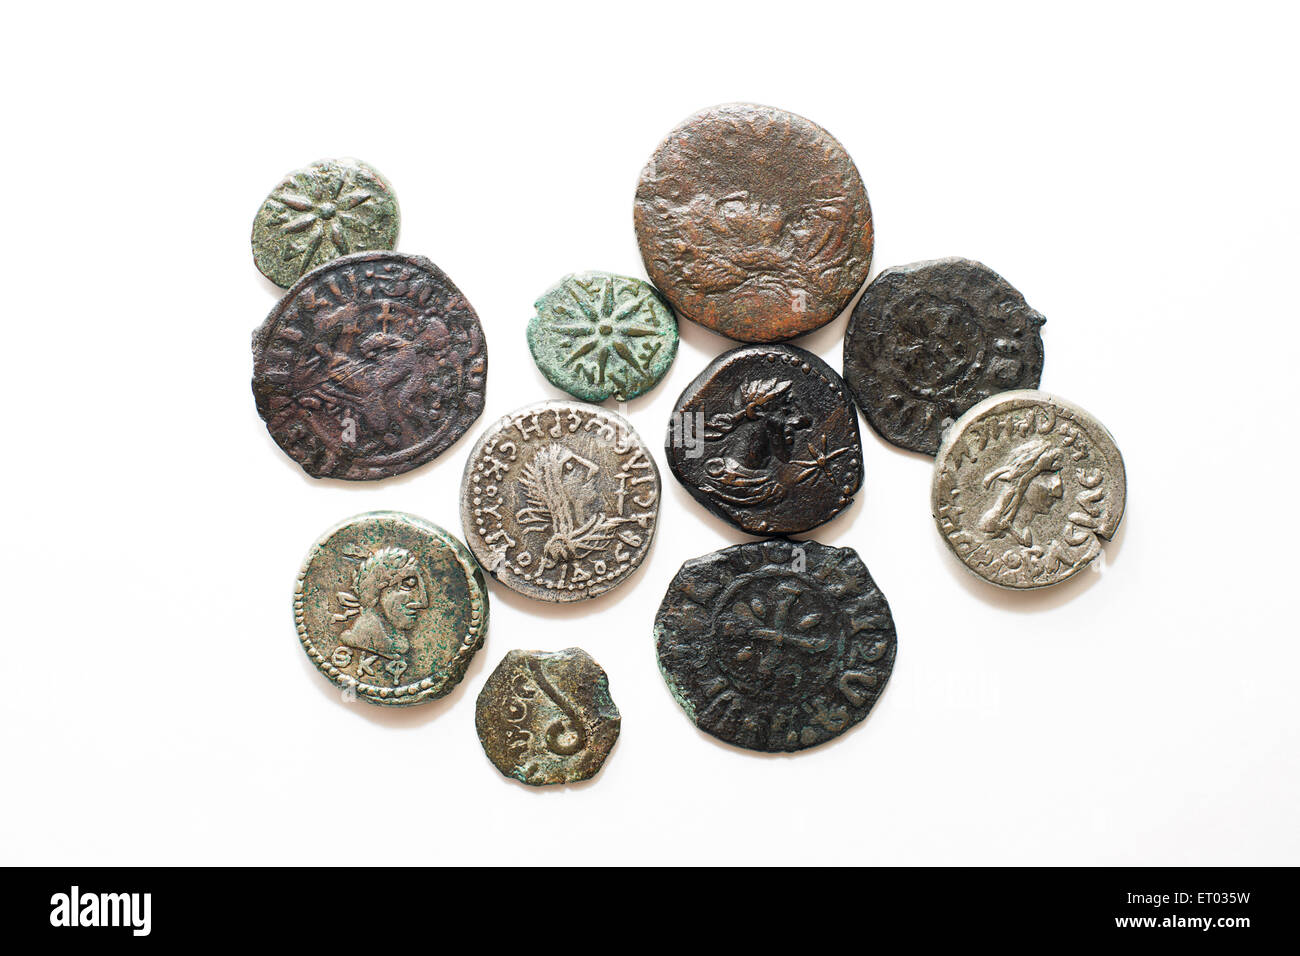 Un sacco di vecchie monete con ritratti di re su sfondo bianco Foto Stock